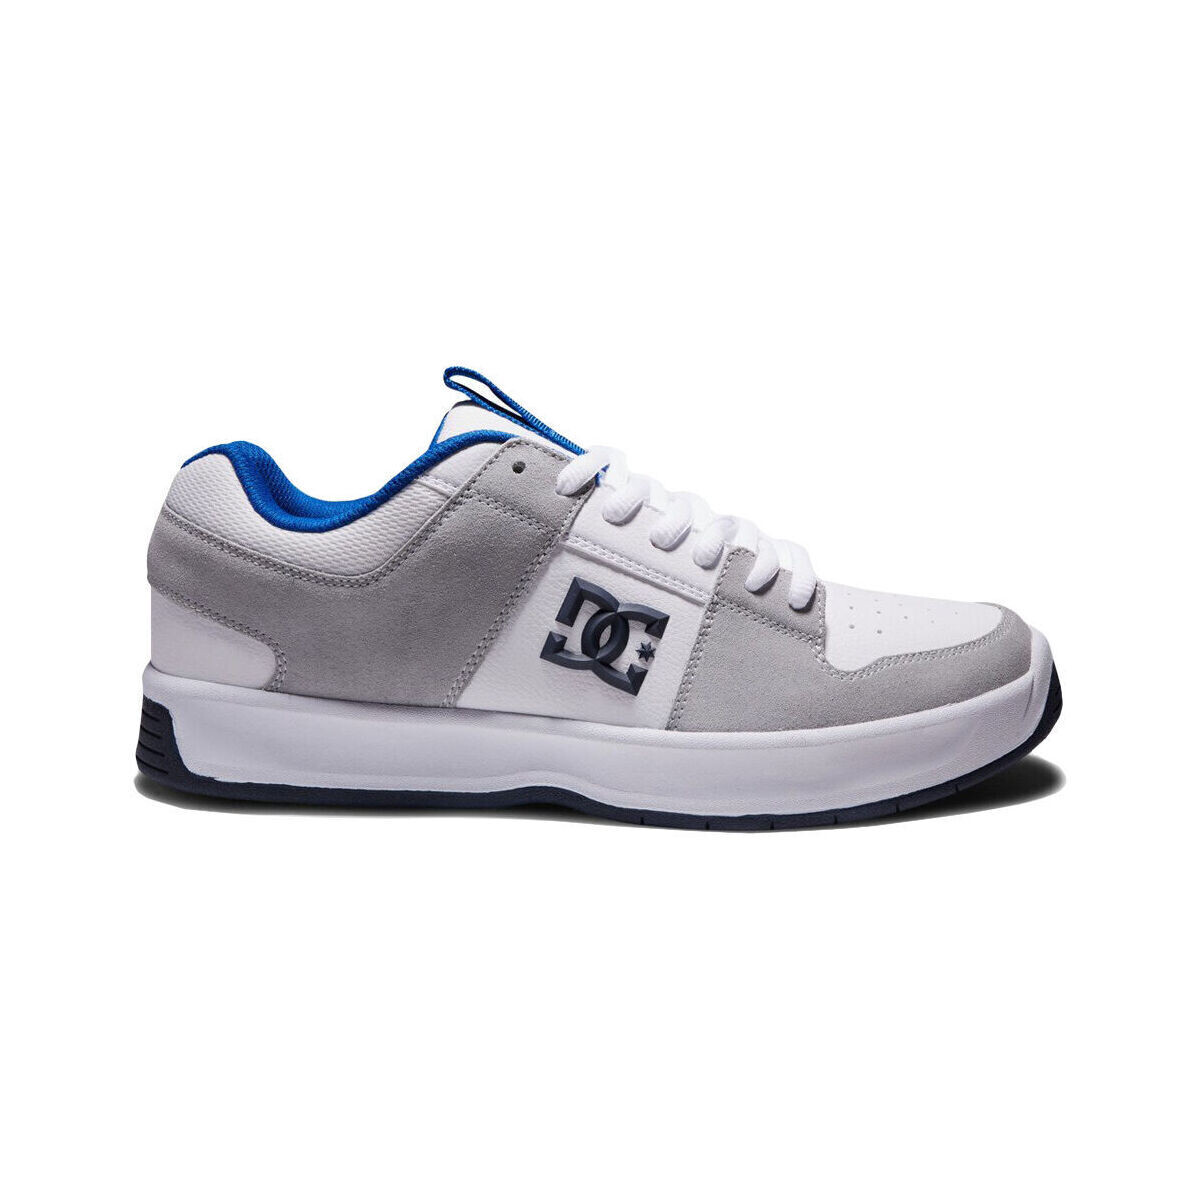 Pantofi Bărbați Sneakers DC Shoes Lynx zero ADYS100615 WHITE/BLUE/GREY (XWBS) Alb